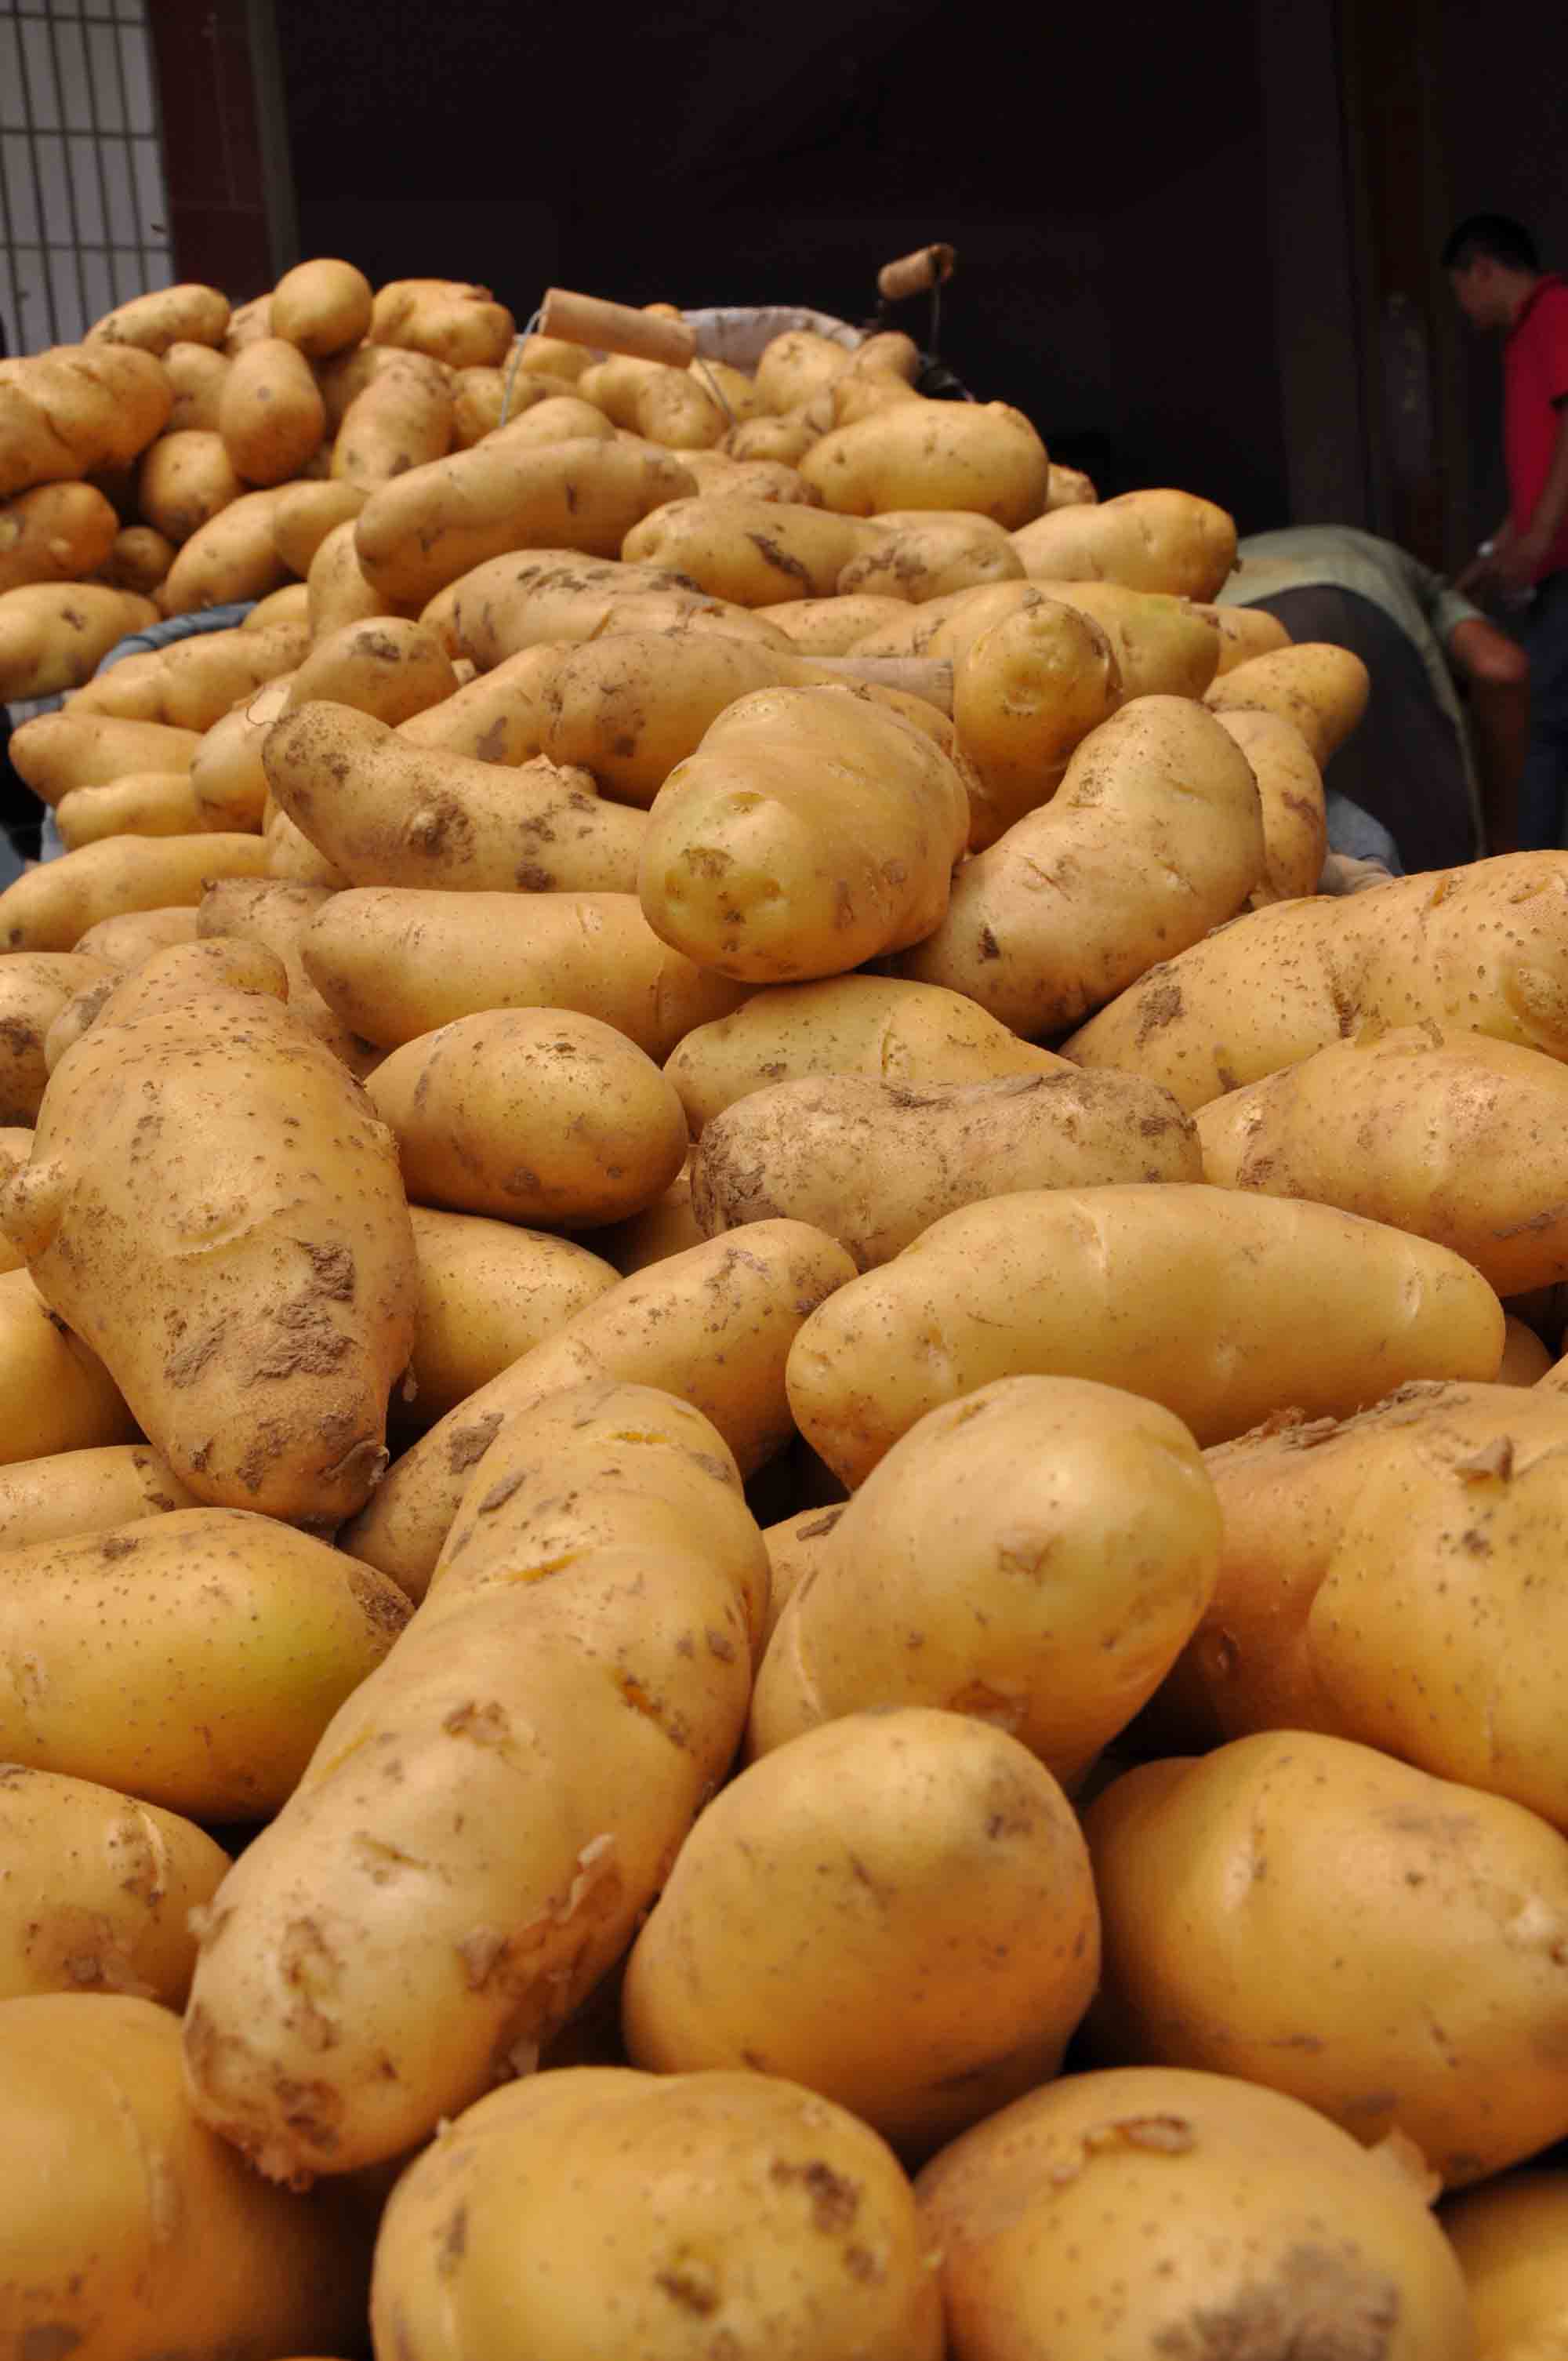 供求频道 蔬菜 薯芋类 土豆  内容阅读  最新马铃薯品种 单价